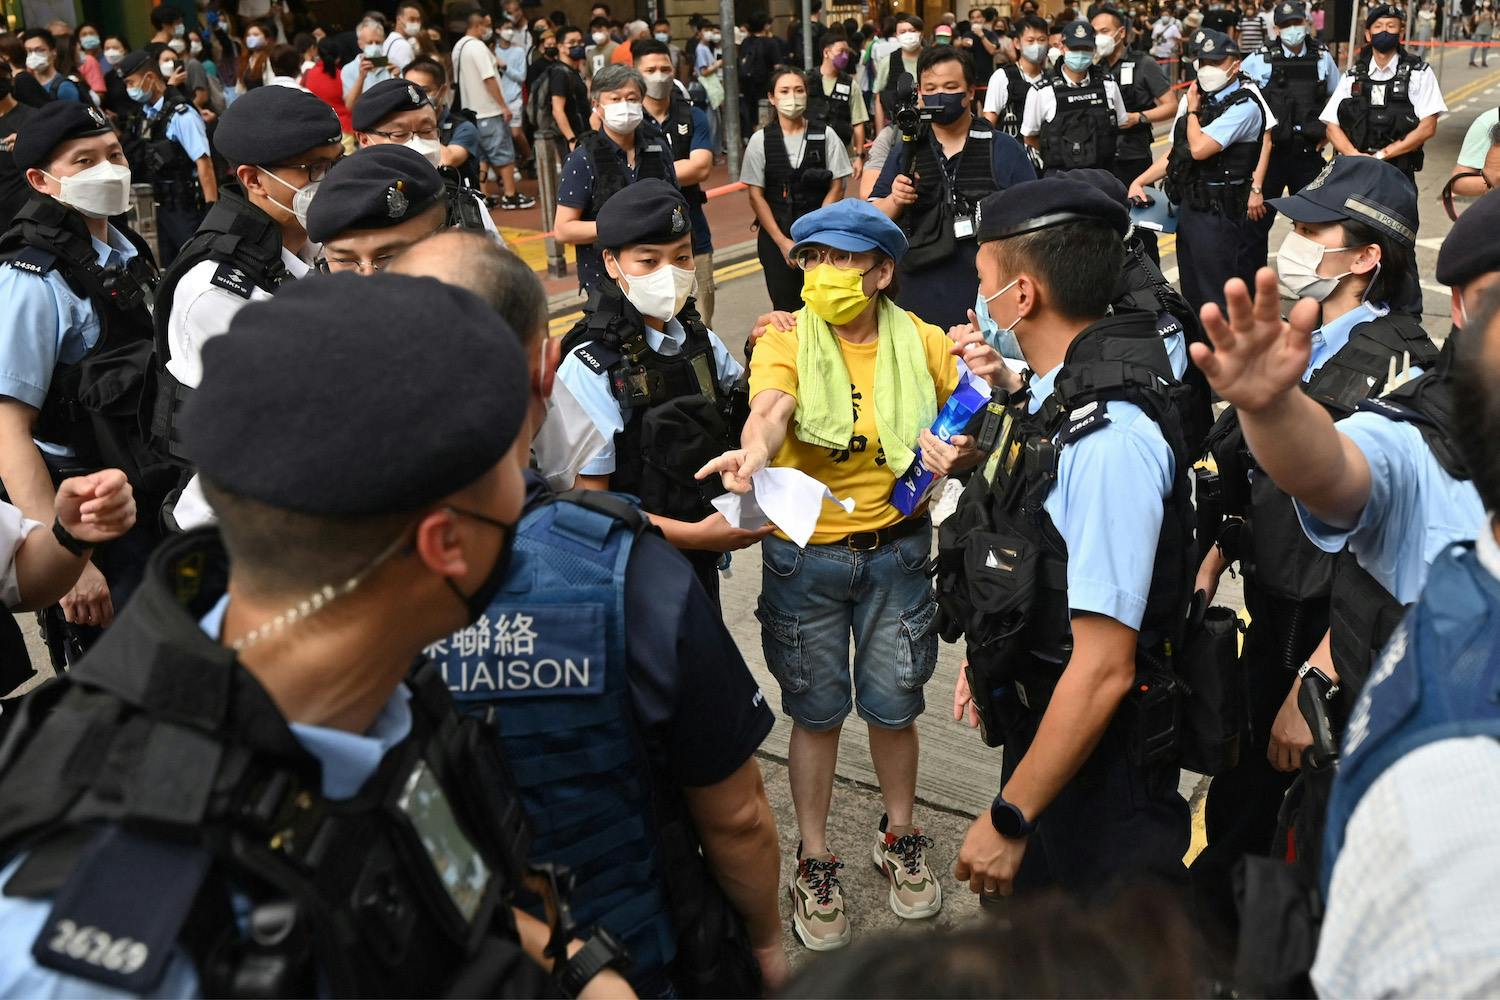 protesters at the Hong Kong handover